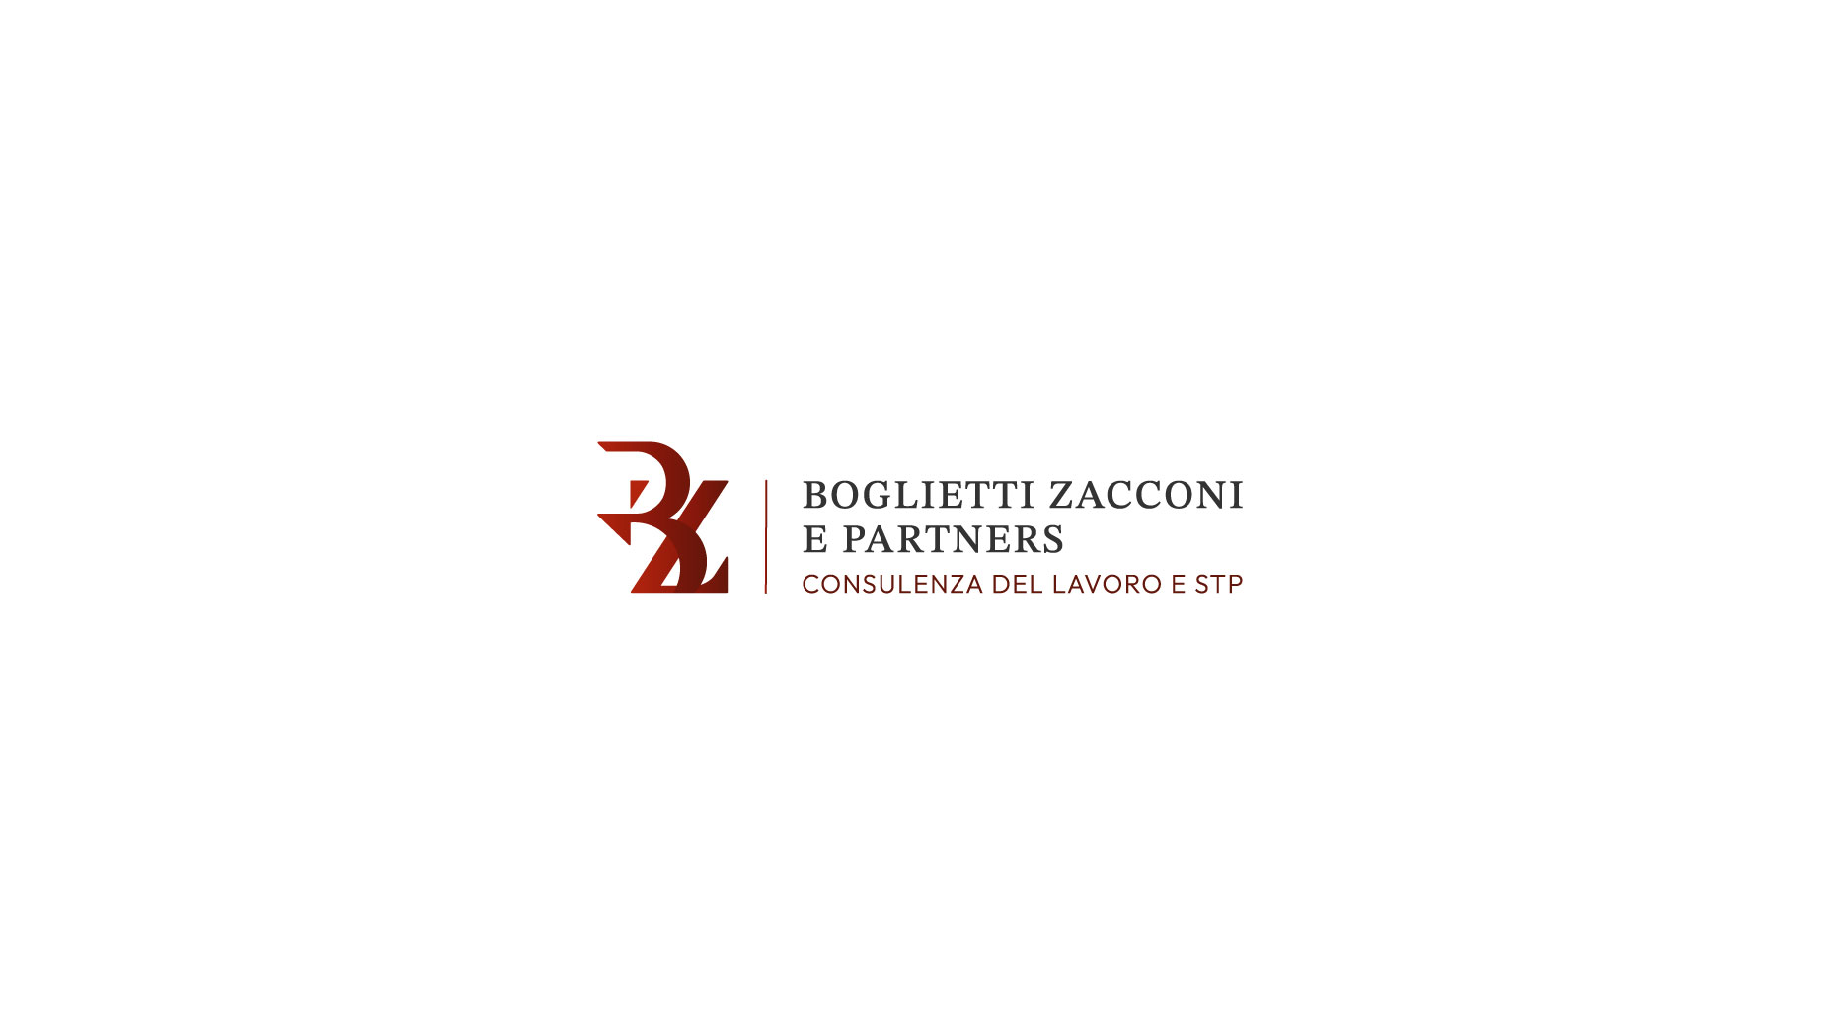 0908_Boglietti_zacconi_proposte_logo_Pagina_12_Immagine_0001